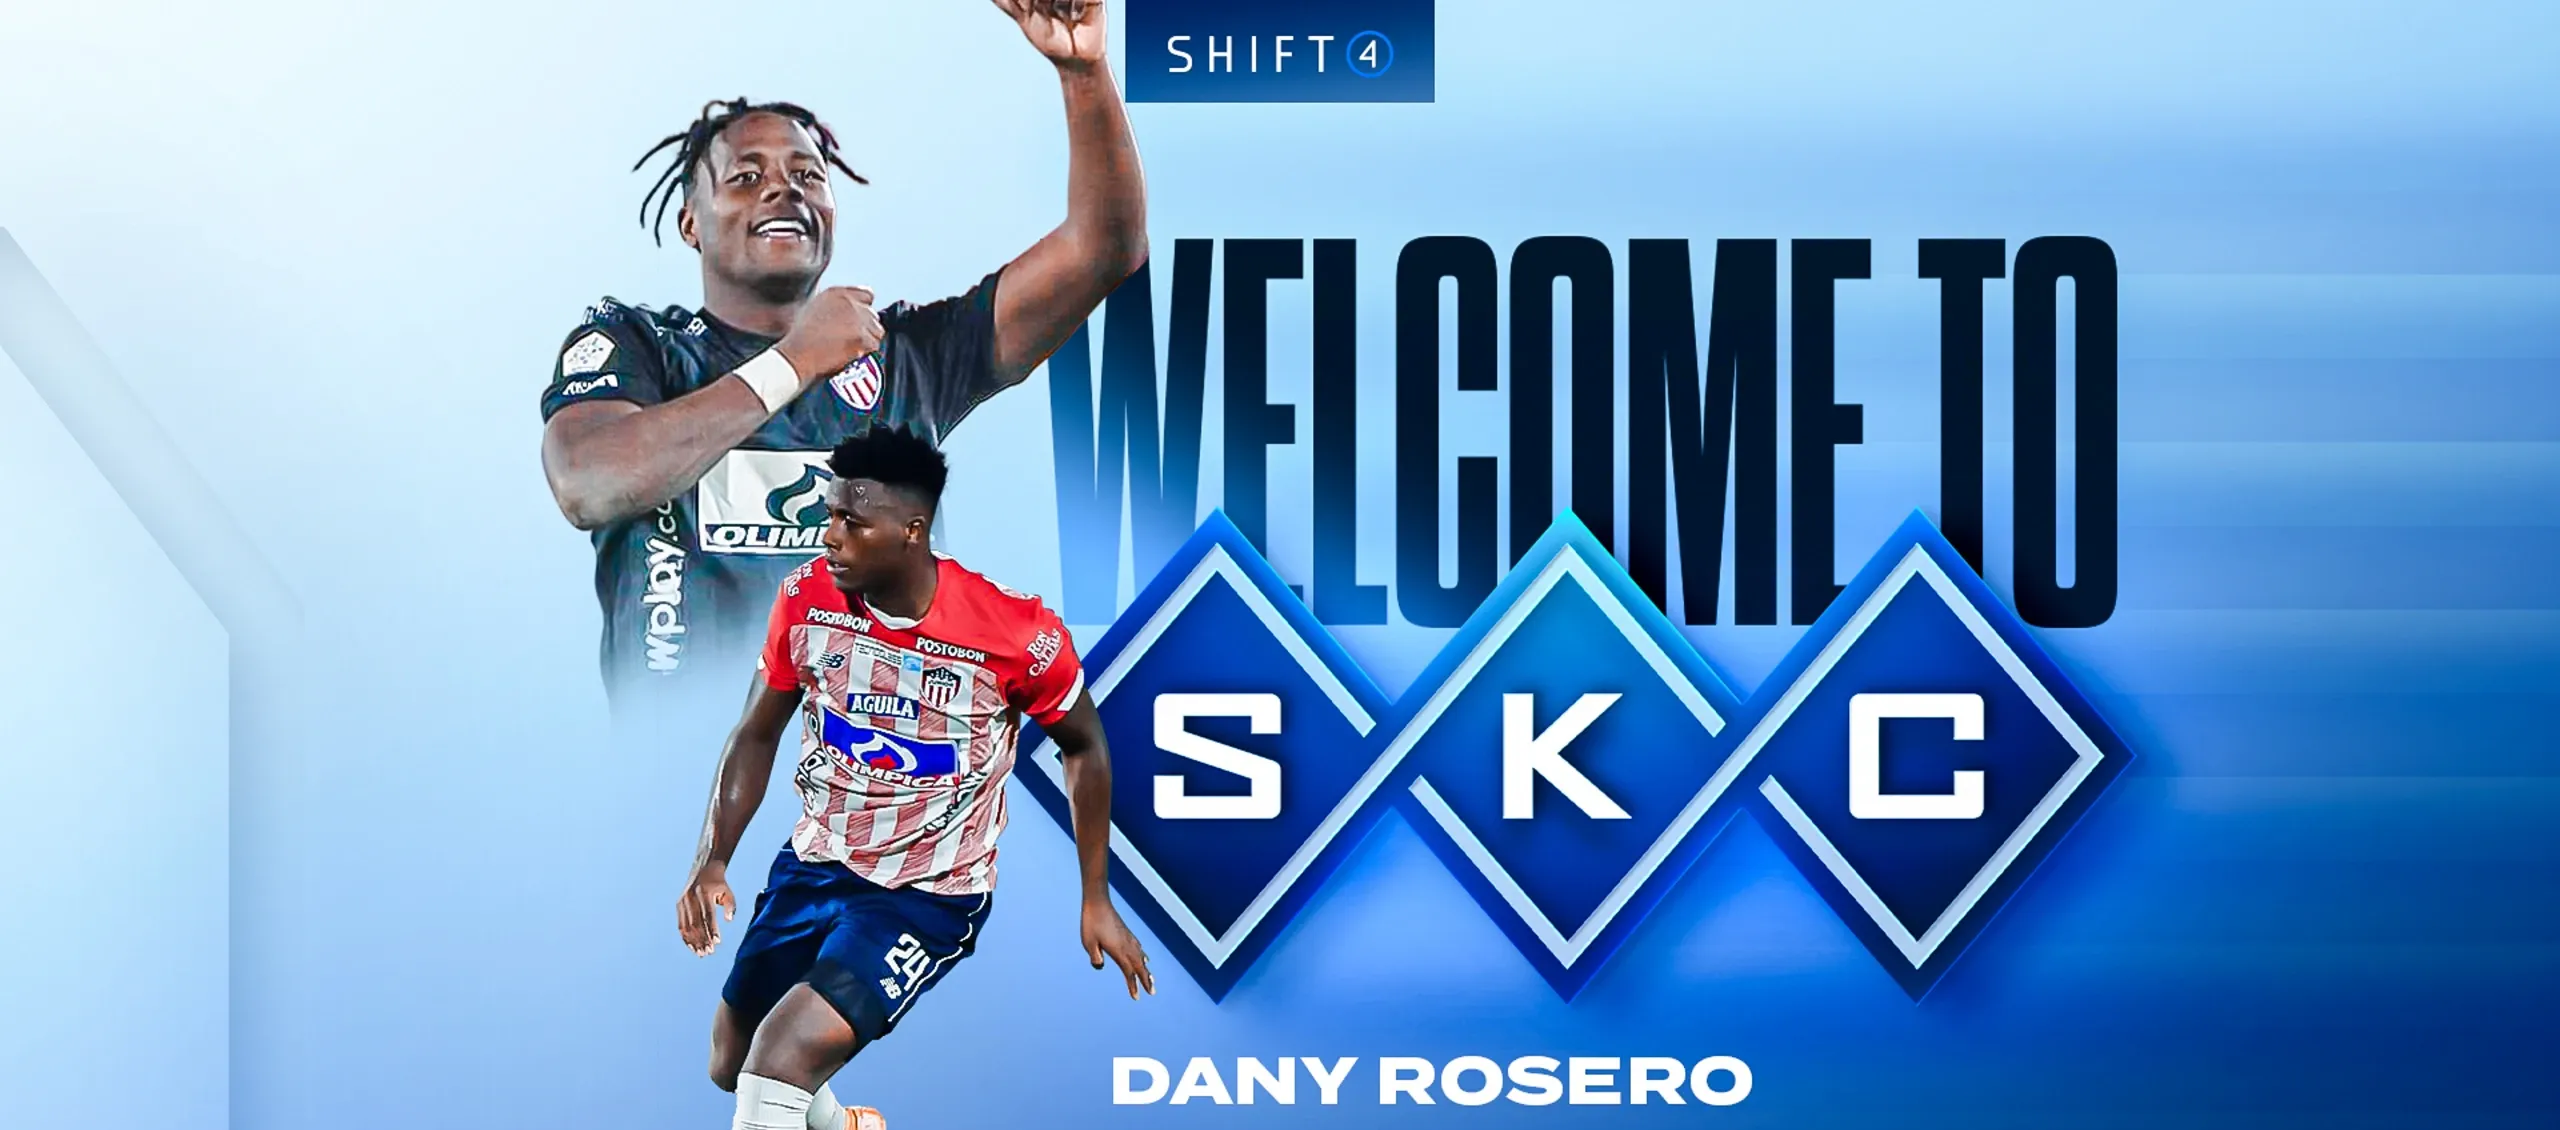 La bienvenida del Sporting Kansas City a Dany Rosero. 